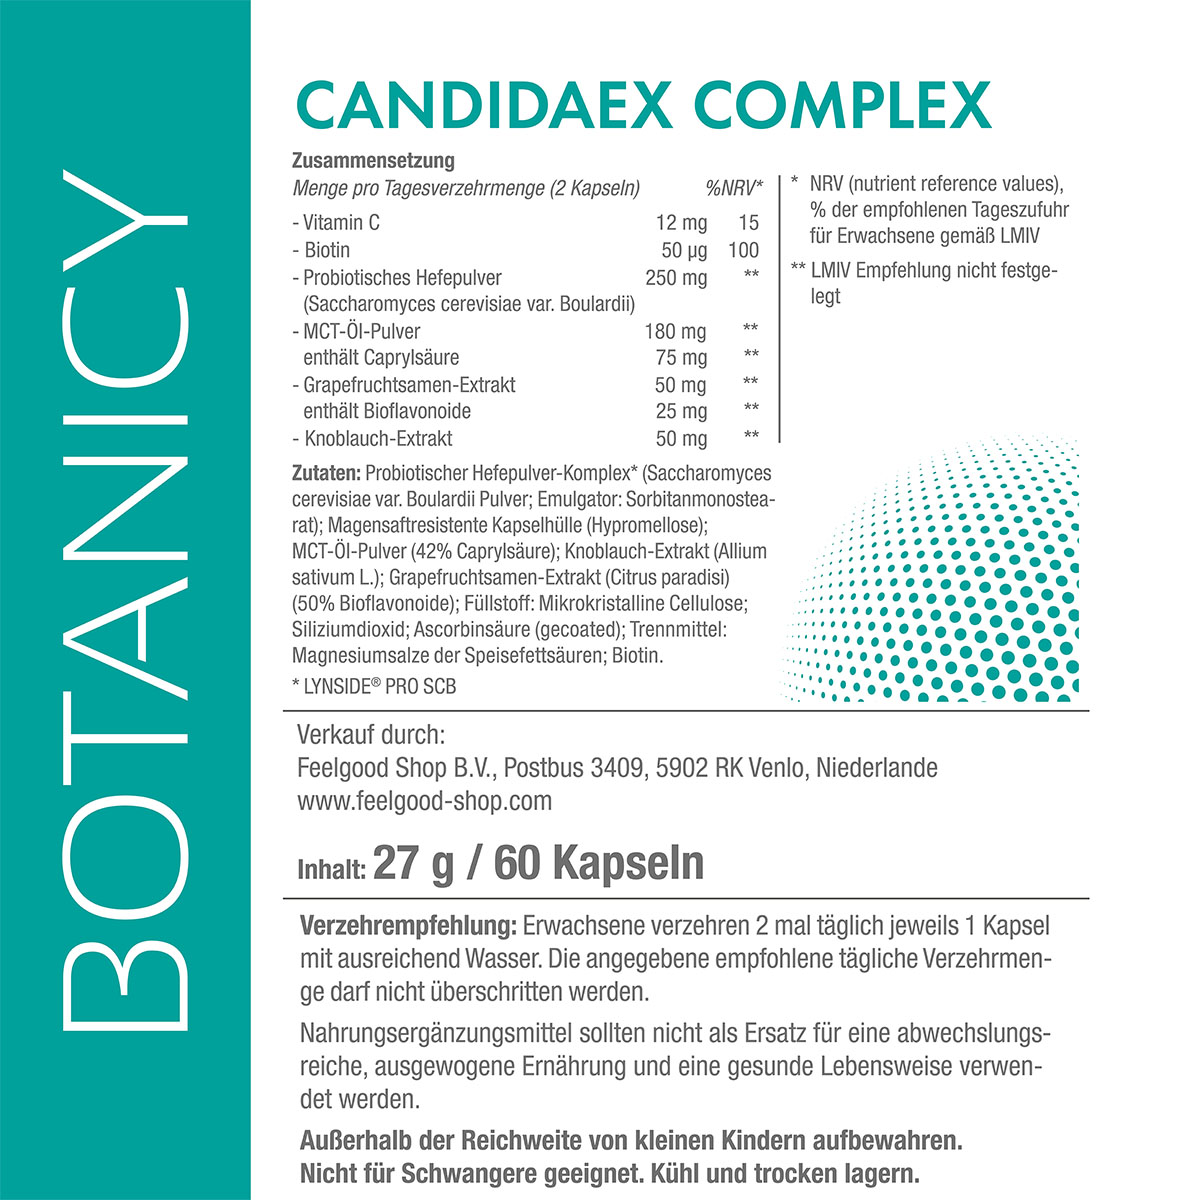 CandidaEx Complex mit LYNSIDE